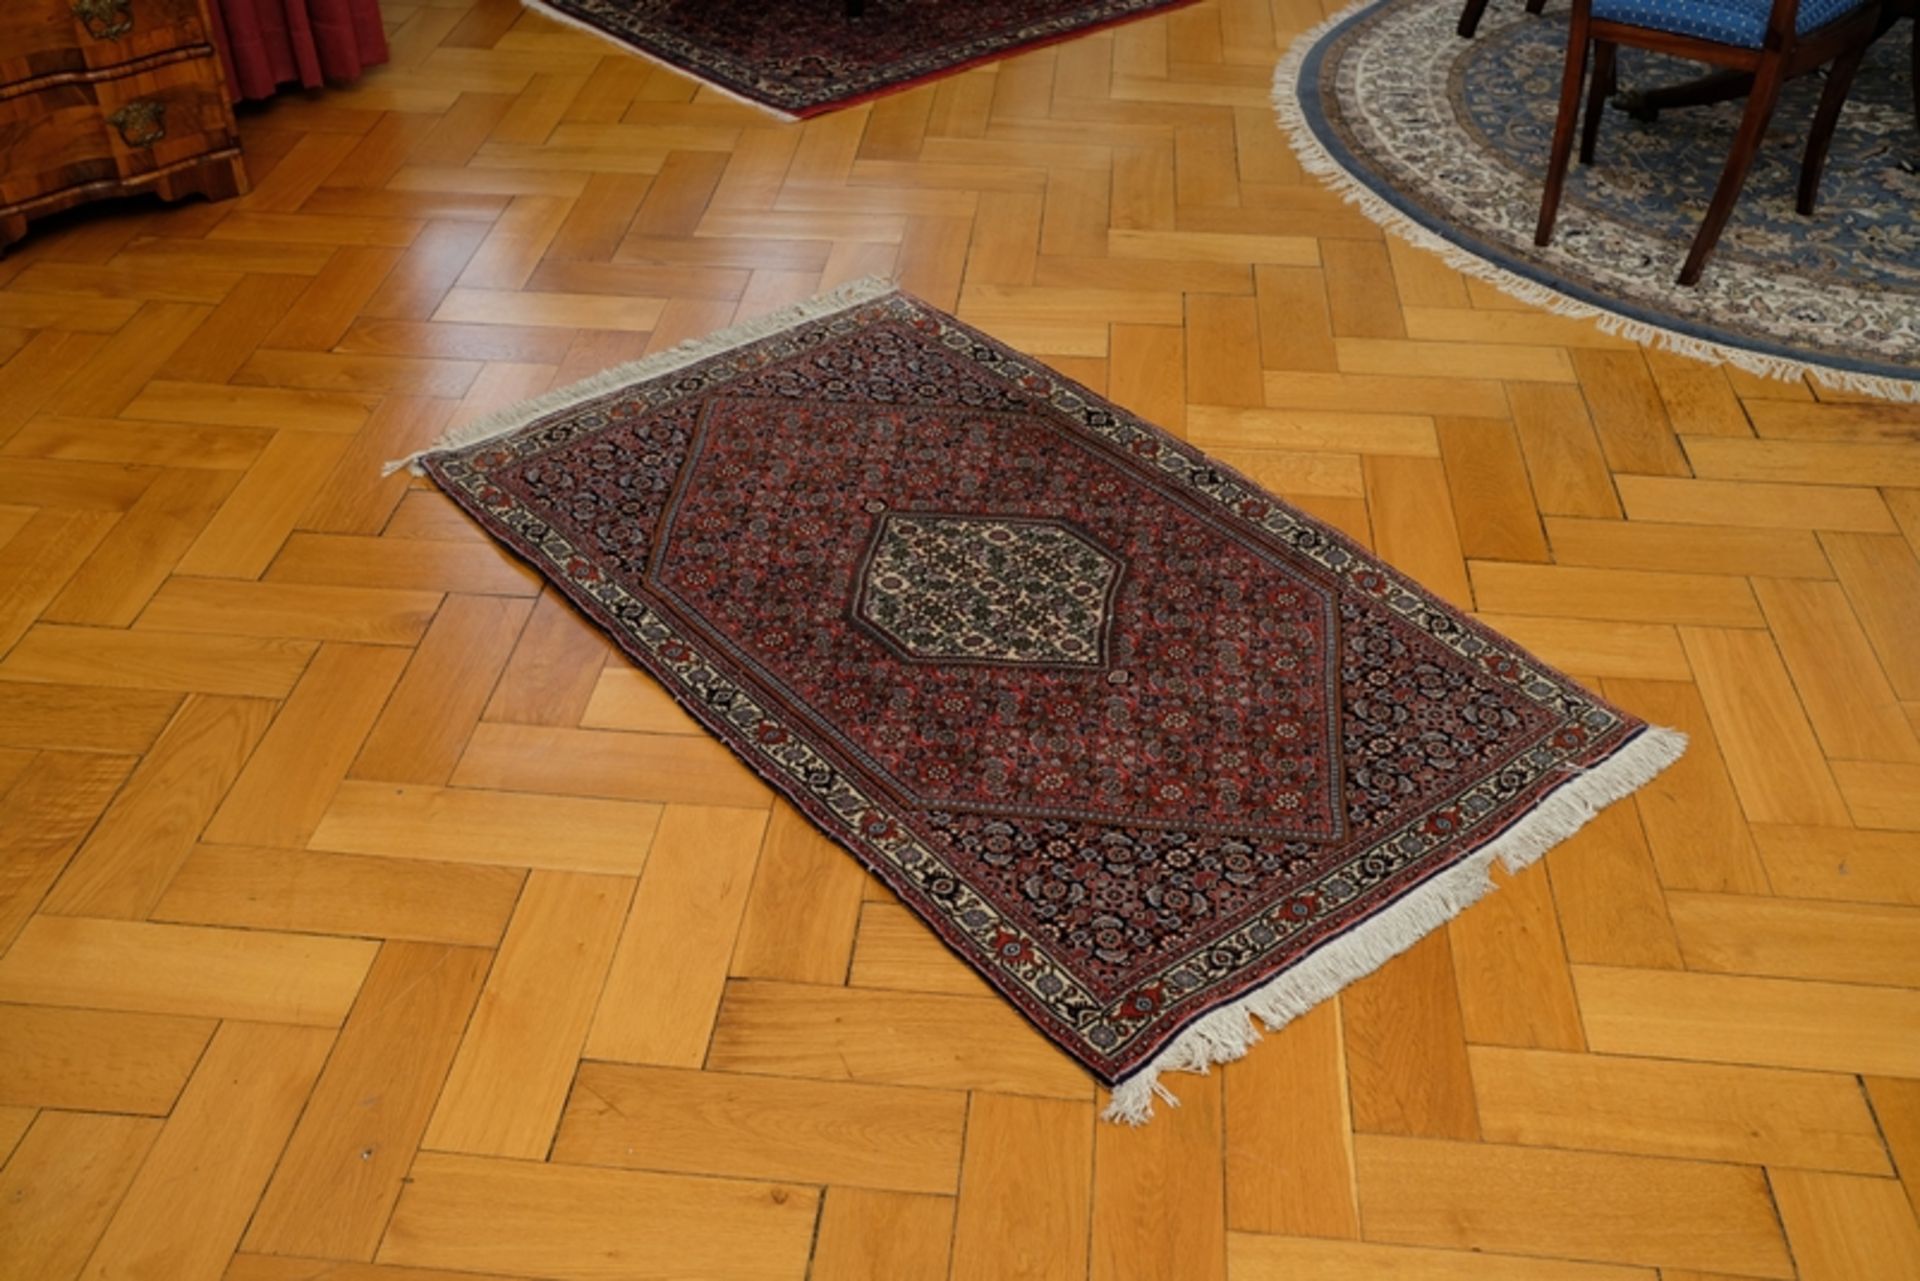 Teppich in leichten Rot-/Brauntönen, Rauten-Design, Fransen